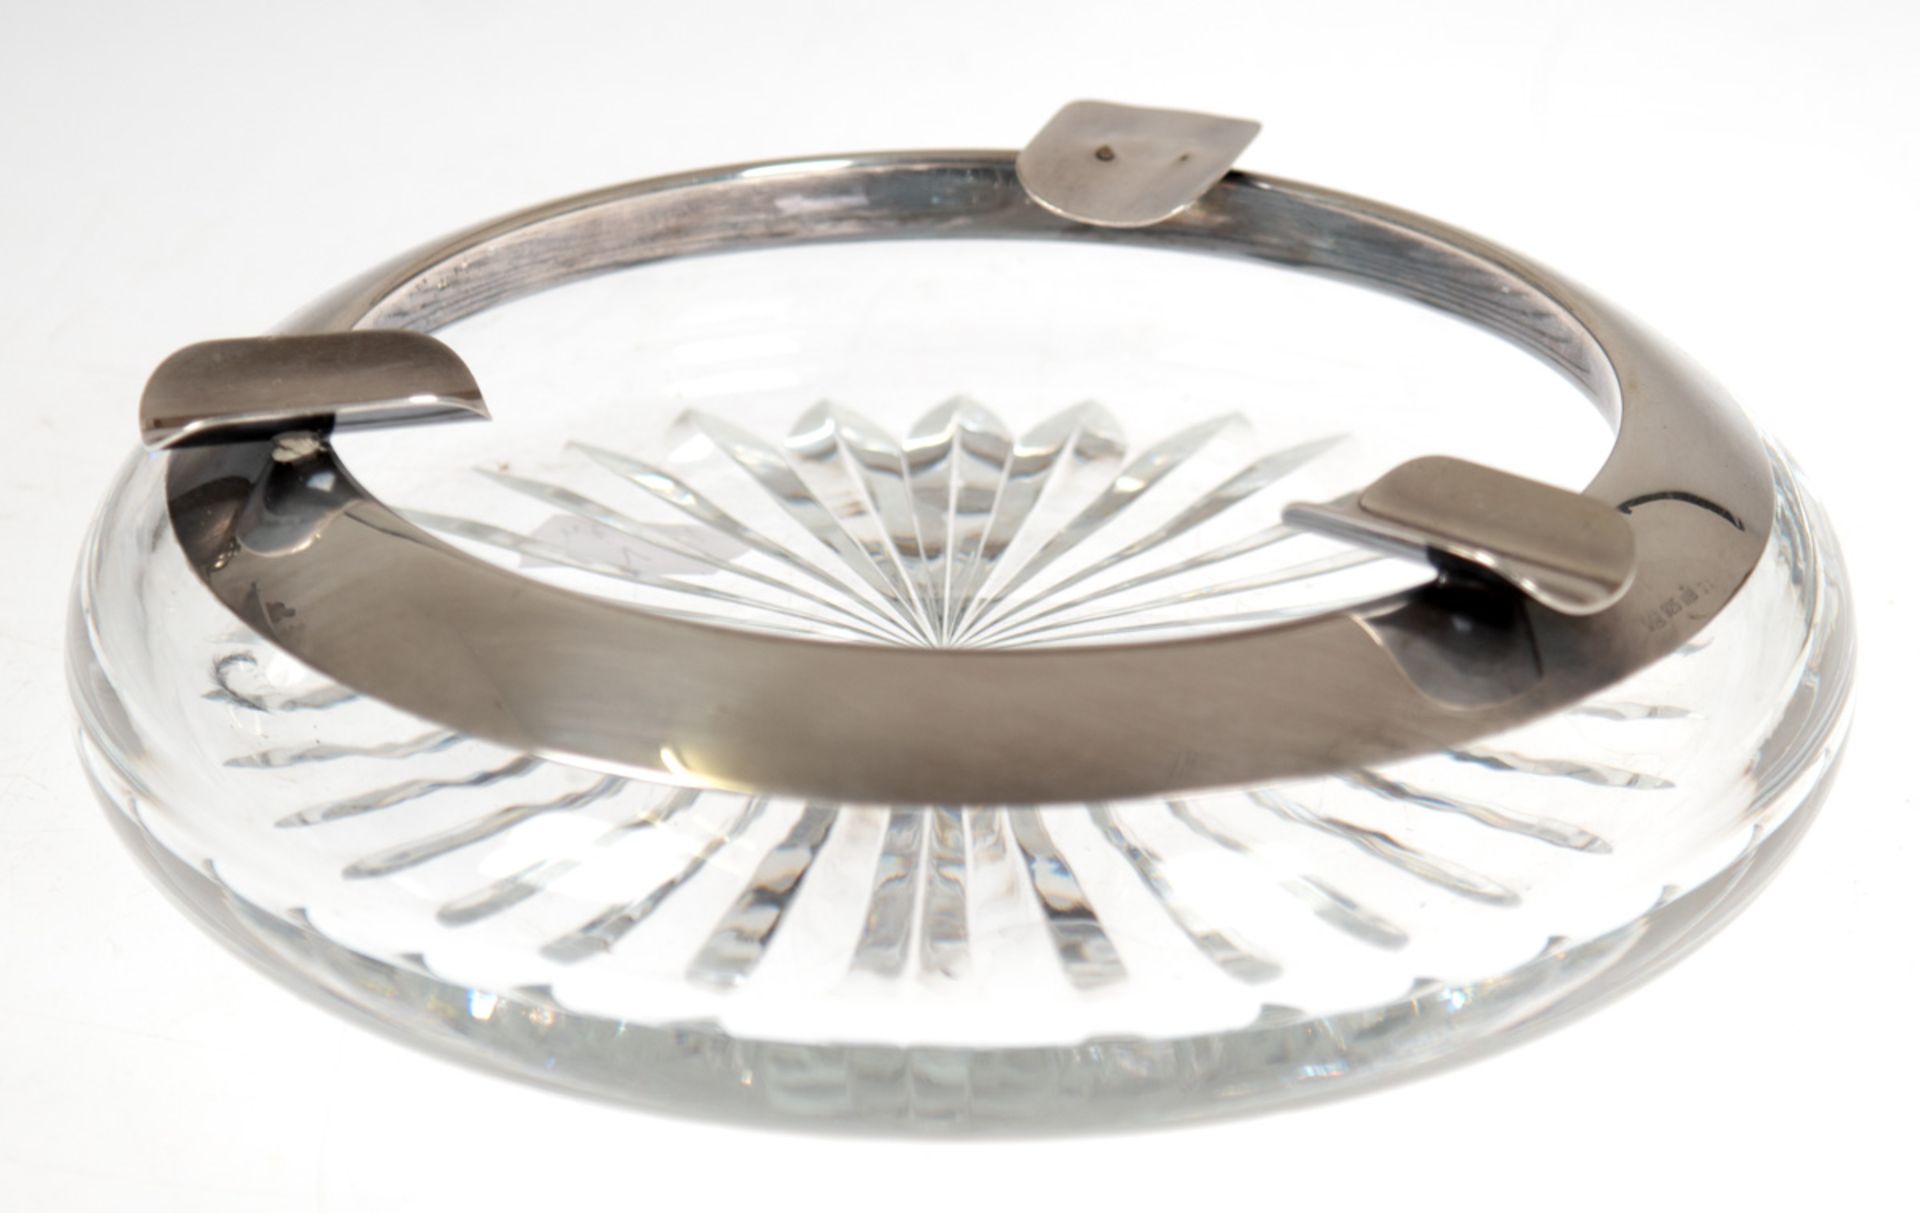 Aschenbecher mit Silbermontierung, Kristallglas, punziert 925er Silber, mit 3 Ablagen, Dm.17 cm